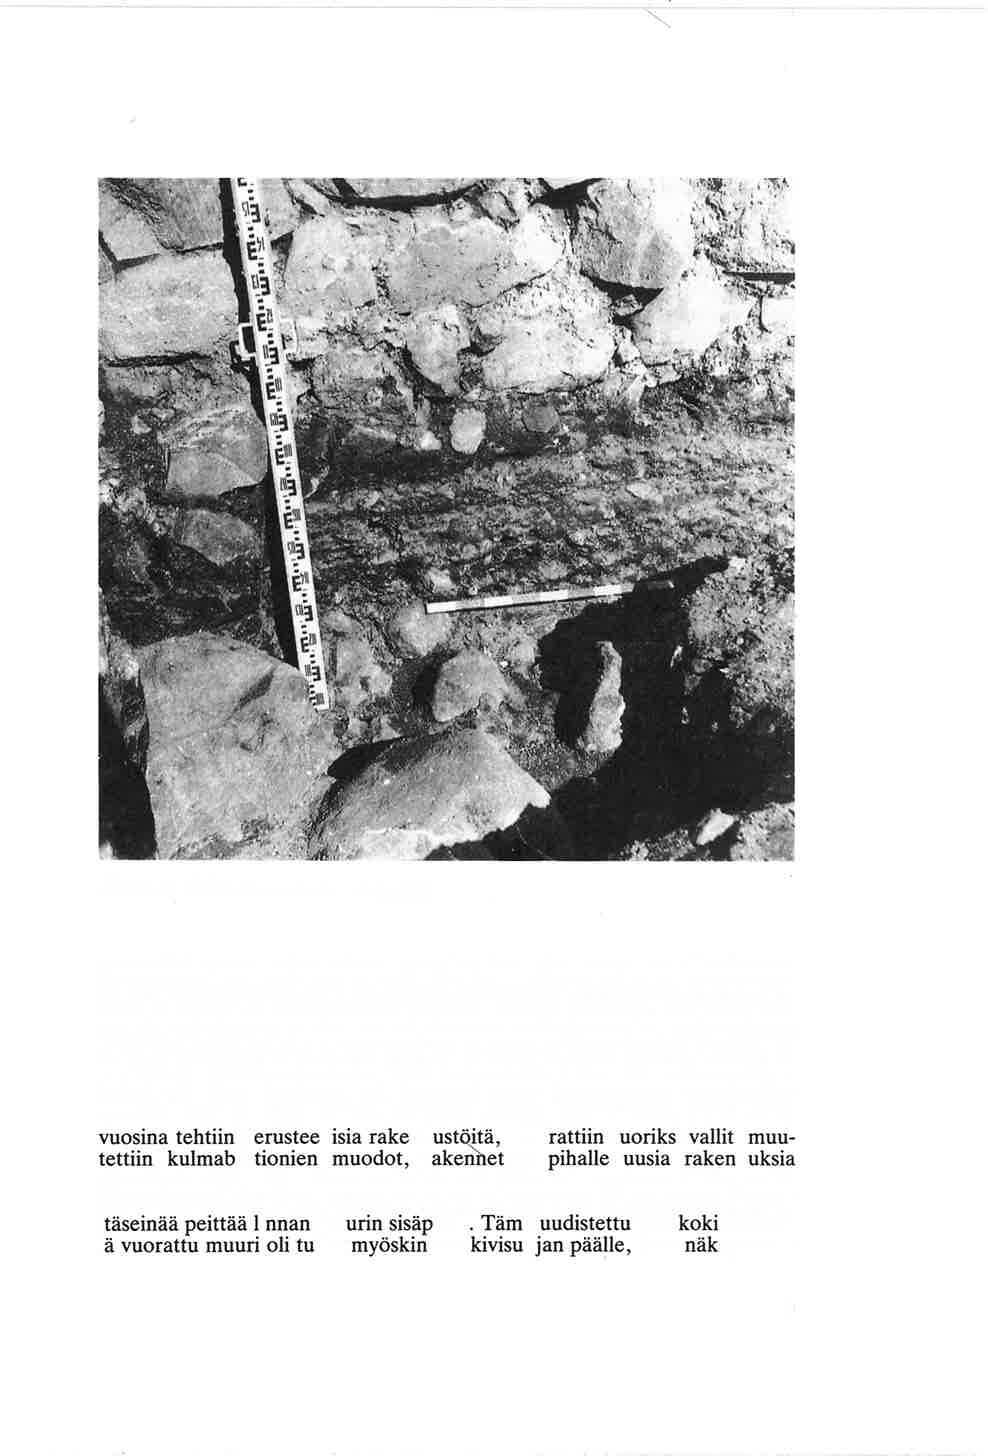 Kuva 4. Kivirakennuksen sisäpuoli. porraskivi vastaa rakennuksen pystyttämisen ajan tasoa, se oli semaman piirroksessa näkyvien savi- ja hiekkalinssien kohdalla (kuva 3).